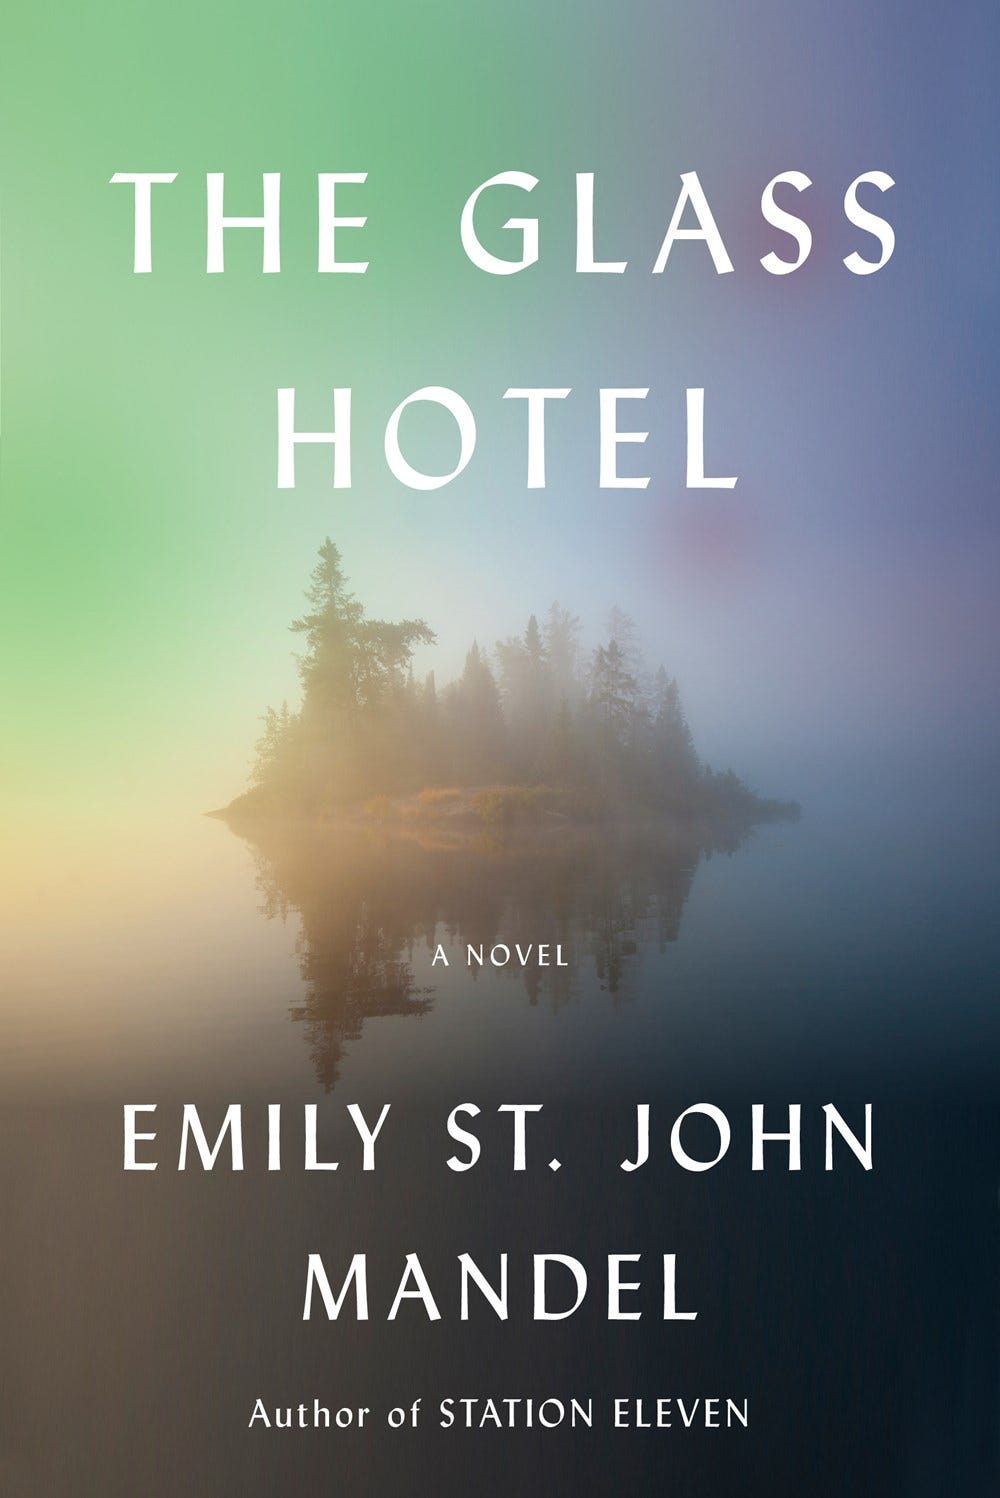 The Glass Hotel by Emily St. John Mandel | Goodreads